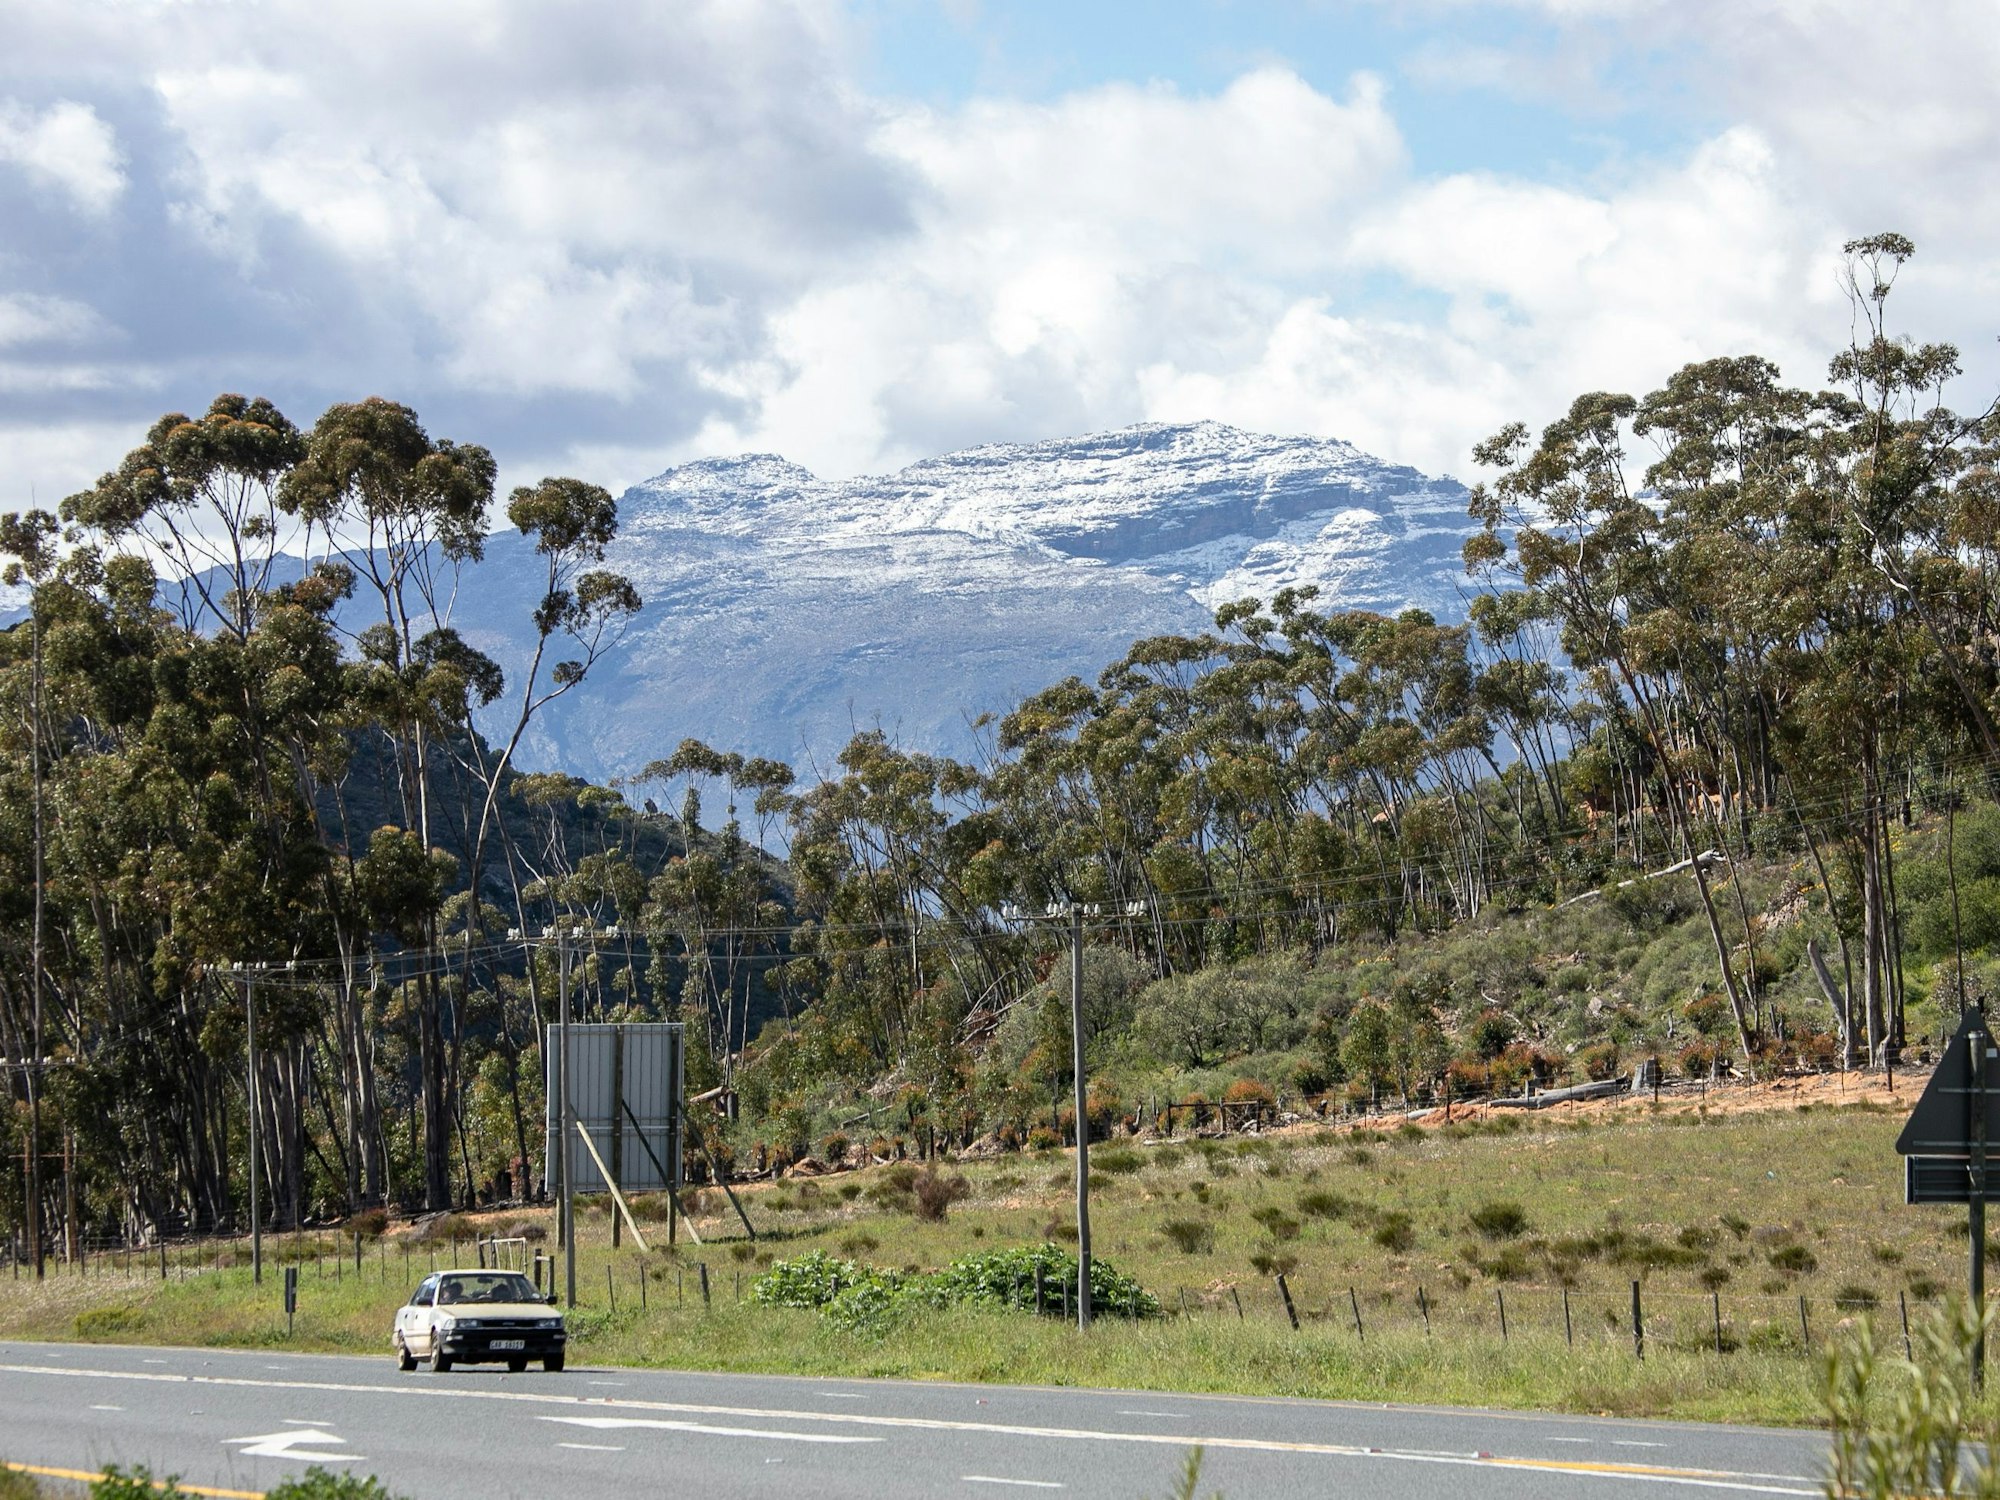 Berge in der Provinz Western Cape sind mit Schnee bedeckt.